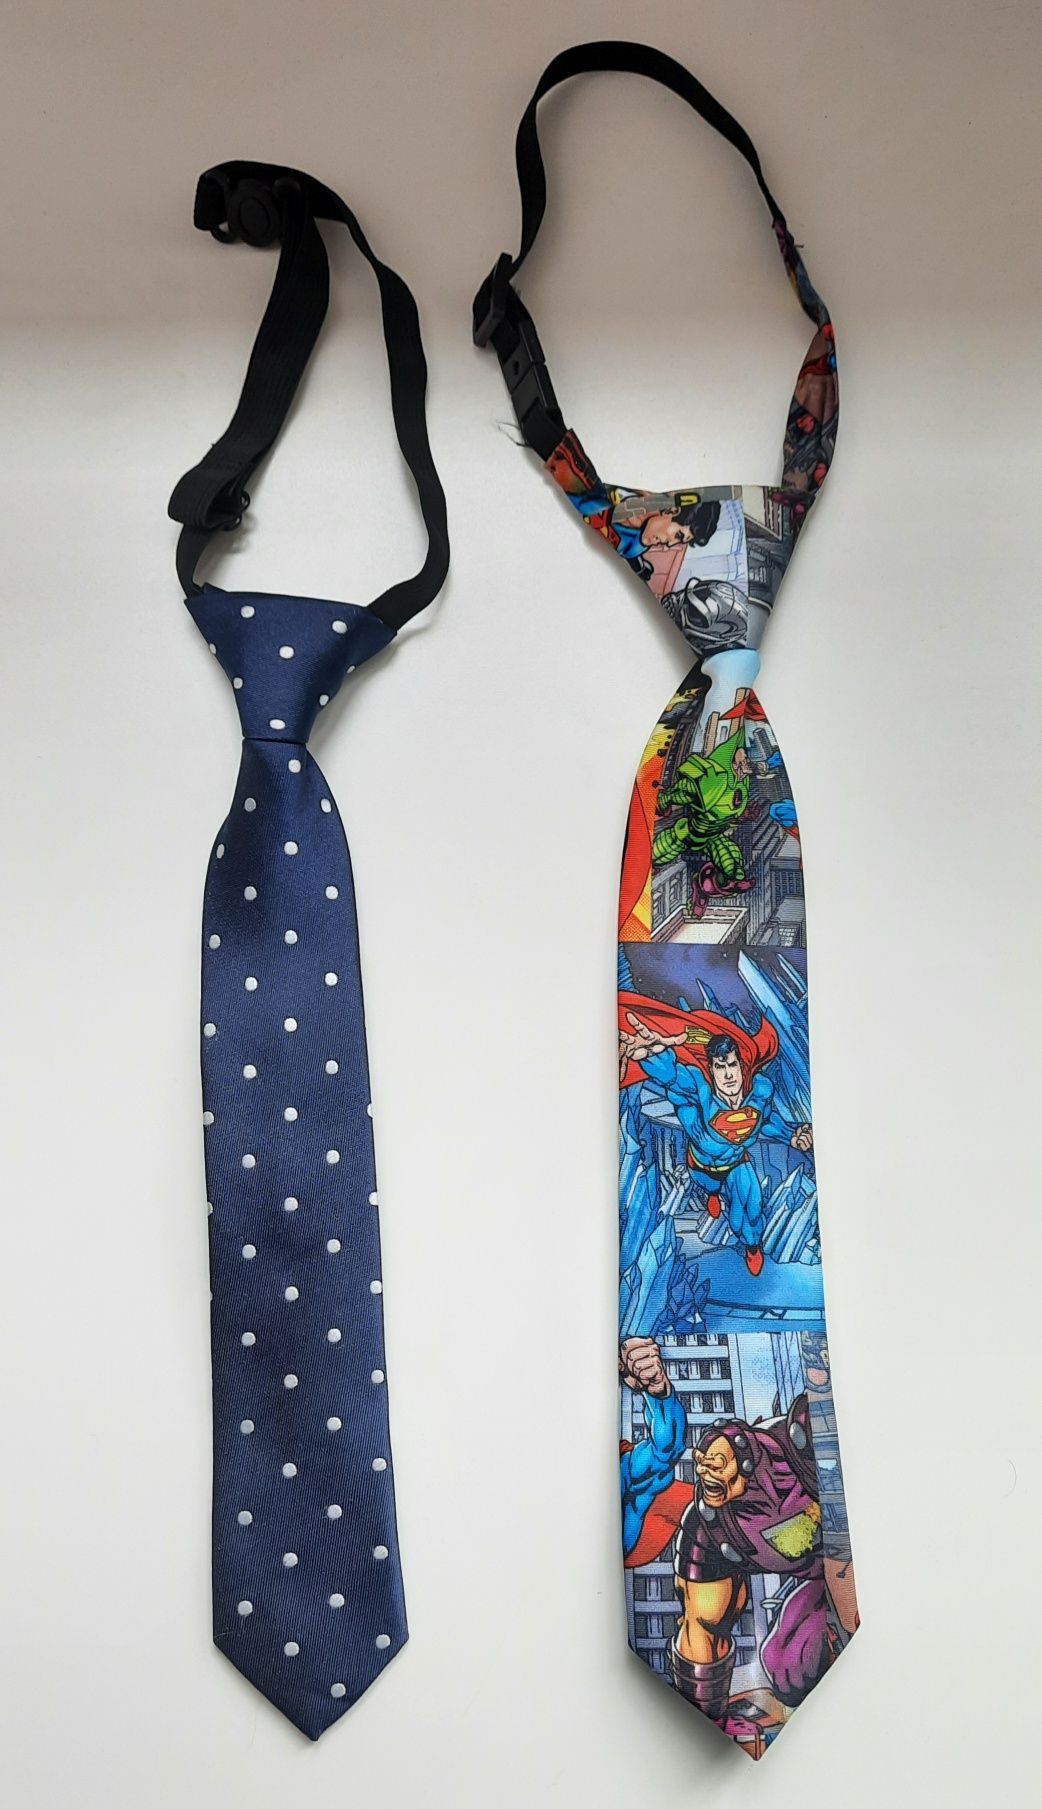 2 krawaty kropki i superman